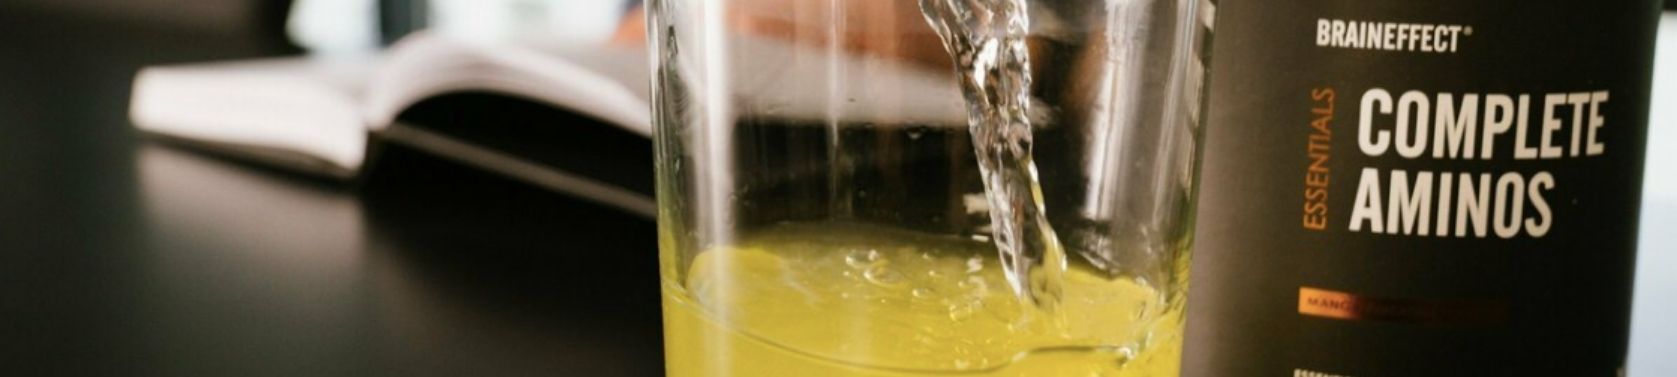 Complete Aminos Braineffect Aminosäuren Getränk im Glas